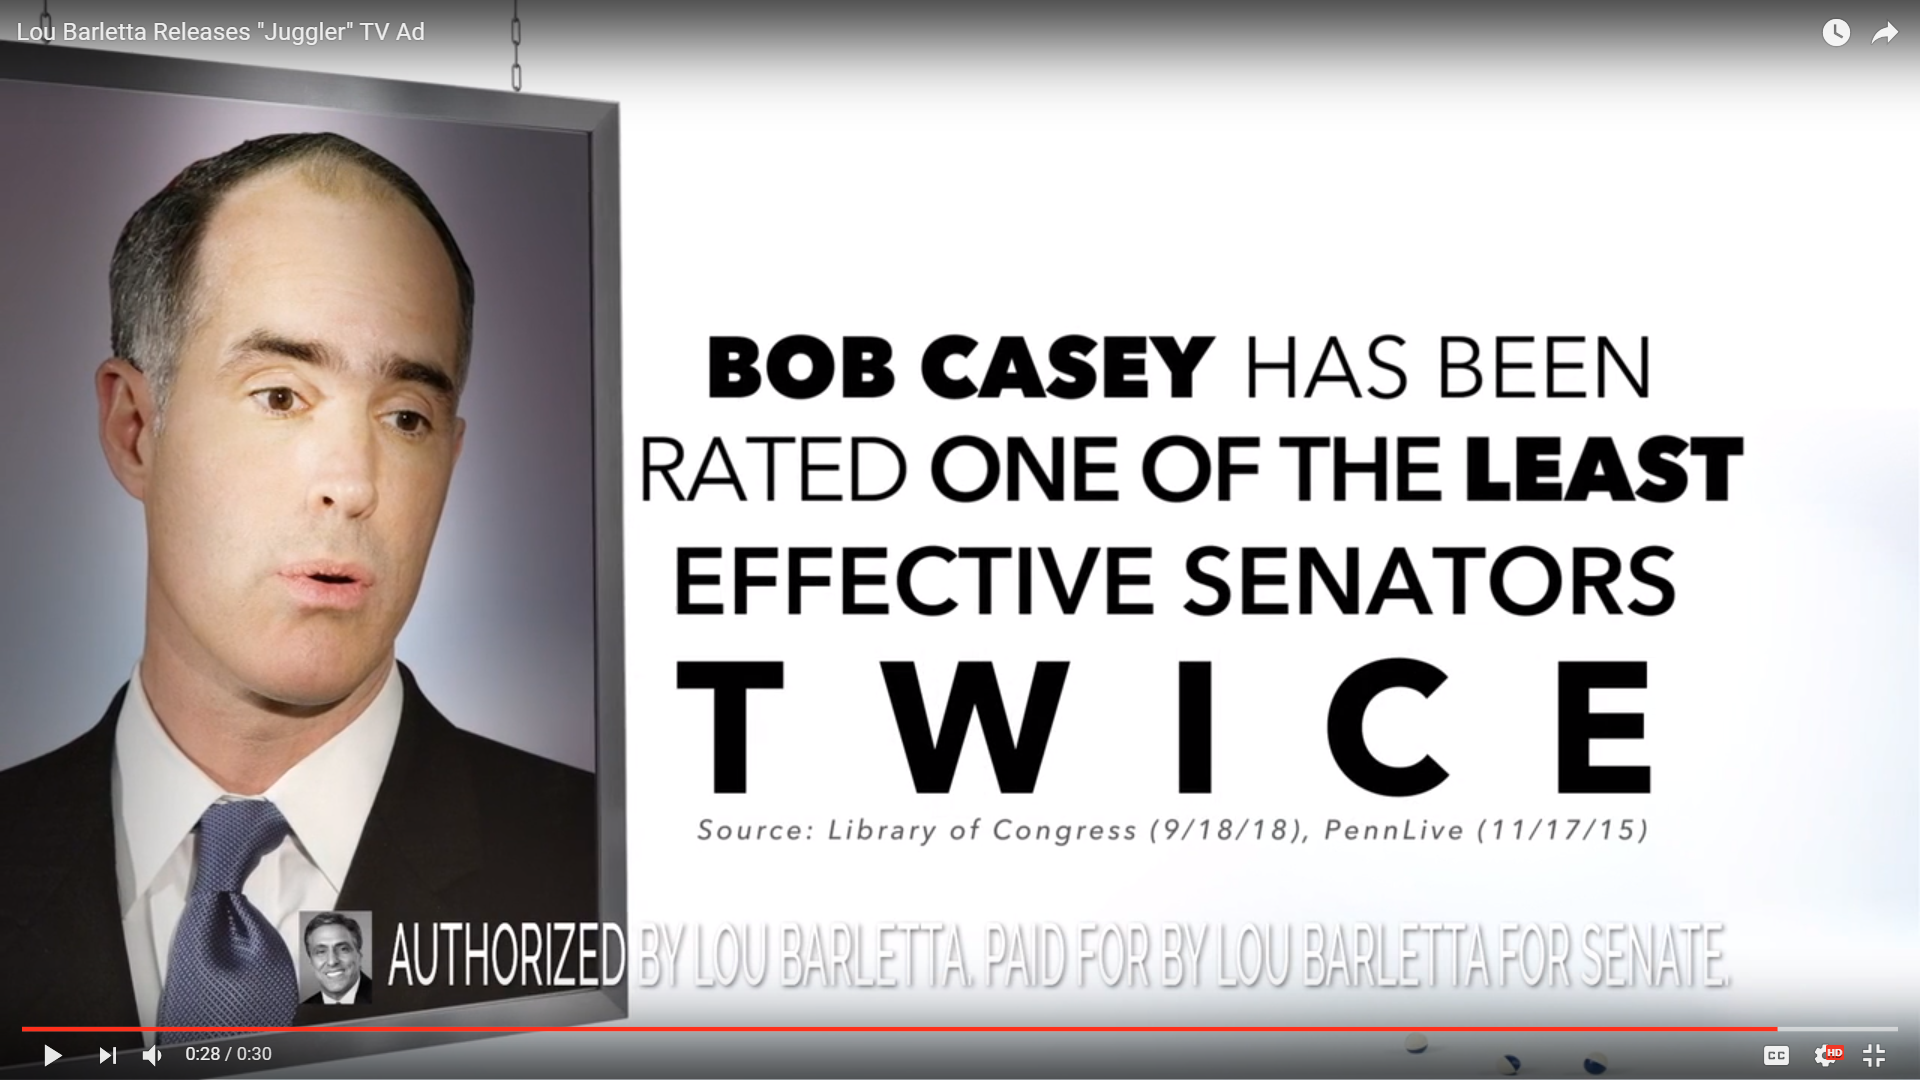 This ad from Lou Barletta's campaign criticizes U.S. Sen. Bob Casey.